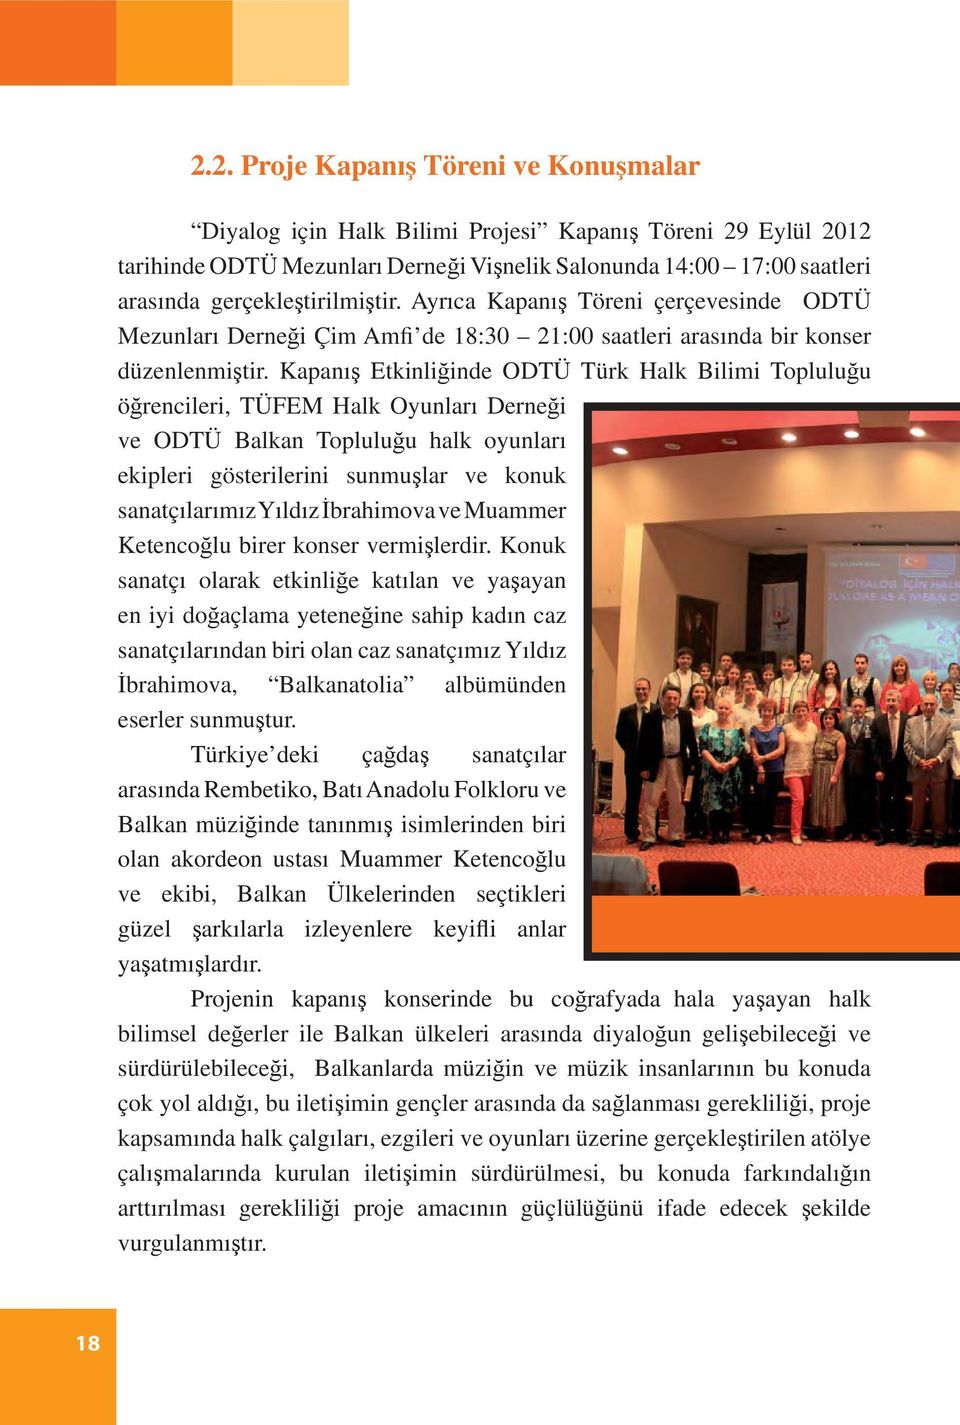 Kapanış Etkinliğinde ODTÜ Türk Halk Bilimi Topluluğu öğrencileri, TÜFEM Halk Oyunları Derneği ve ODTÜ Balkan Topluluğu halk oyunları ekipleri gösterilerini sunmuşlar ve konuk sanatçılarımız Yıldız